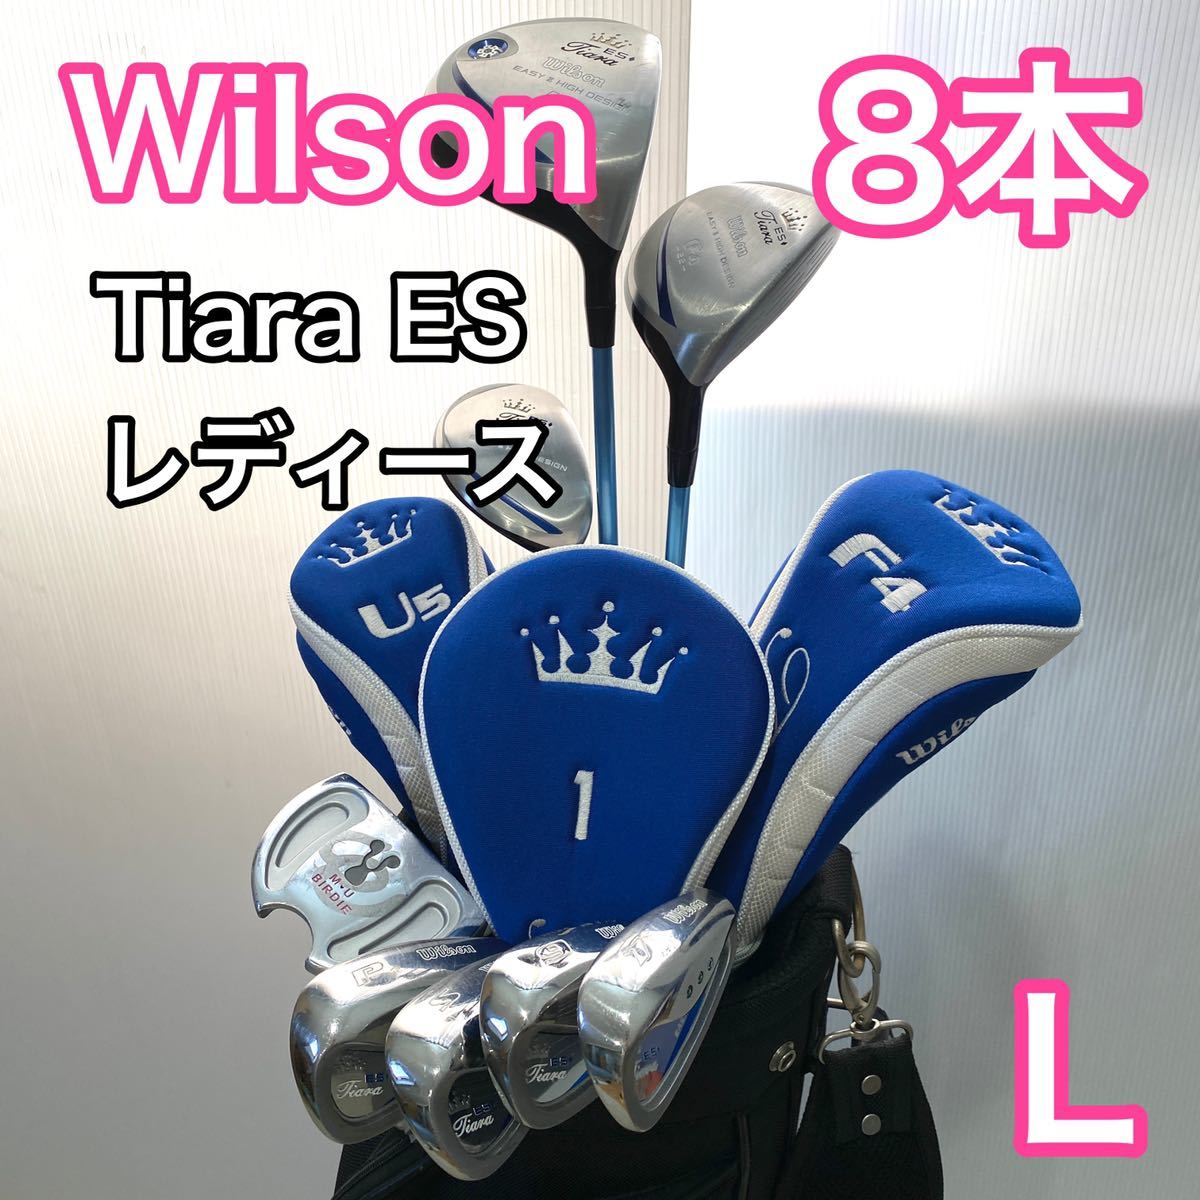 ウィルソン ティアラ ES レディース ゴルフセット 8本 キャディバッグ